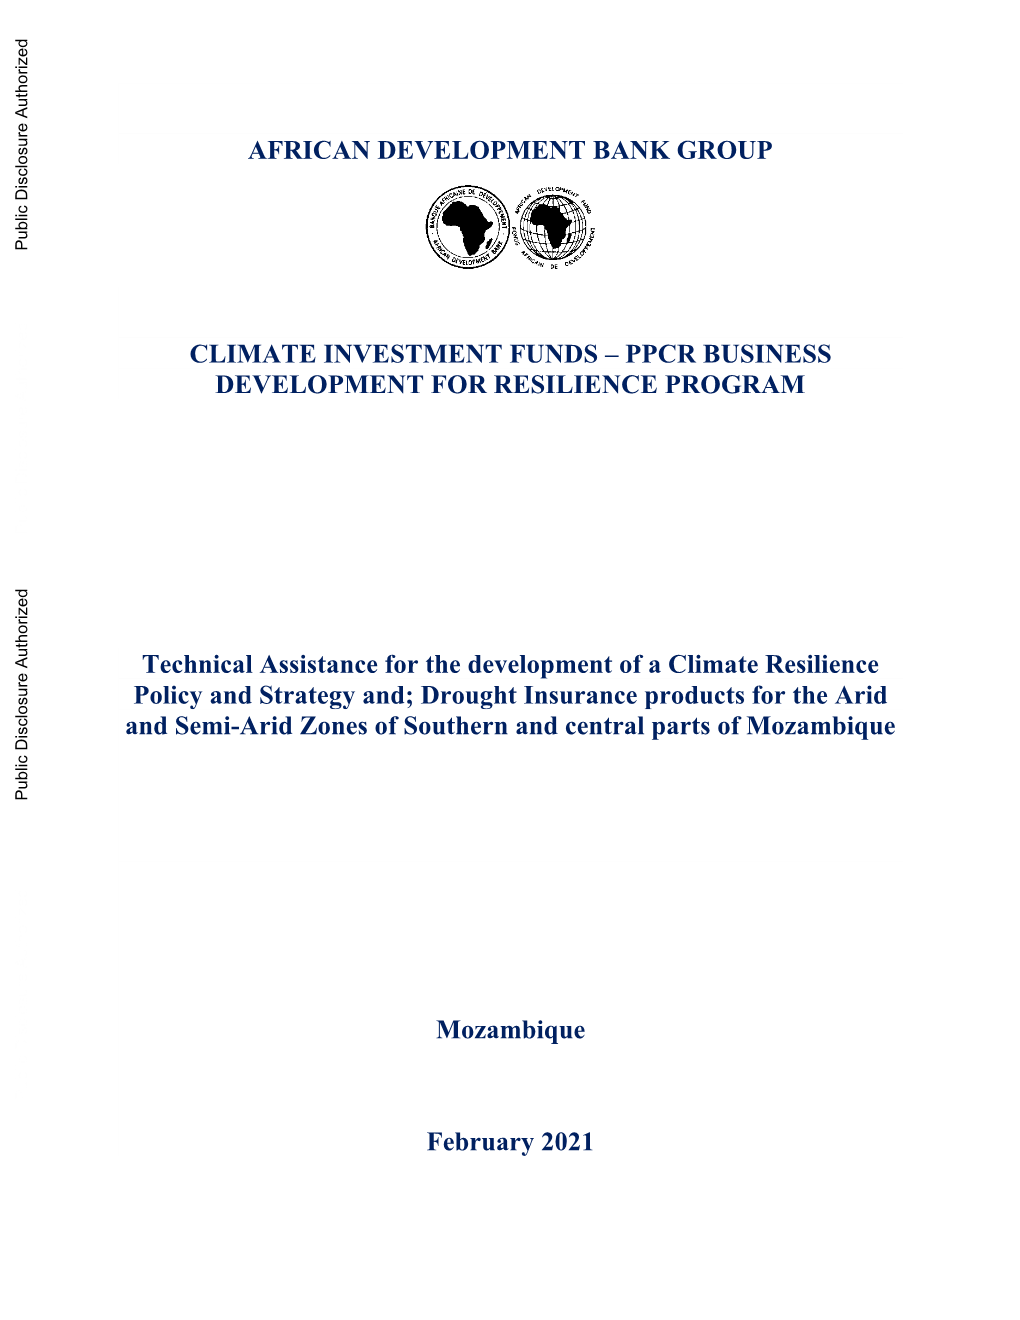 13392-PPCR-Mozambique-BDRP-Project-Document.Pdf